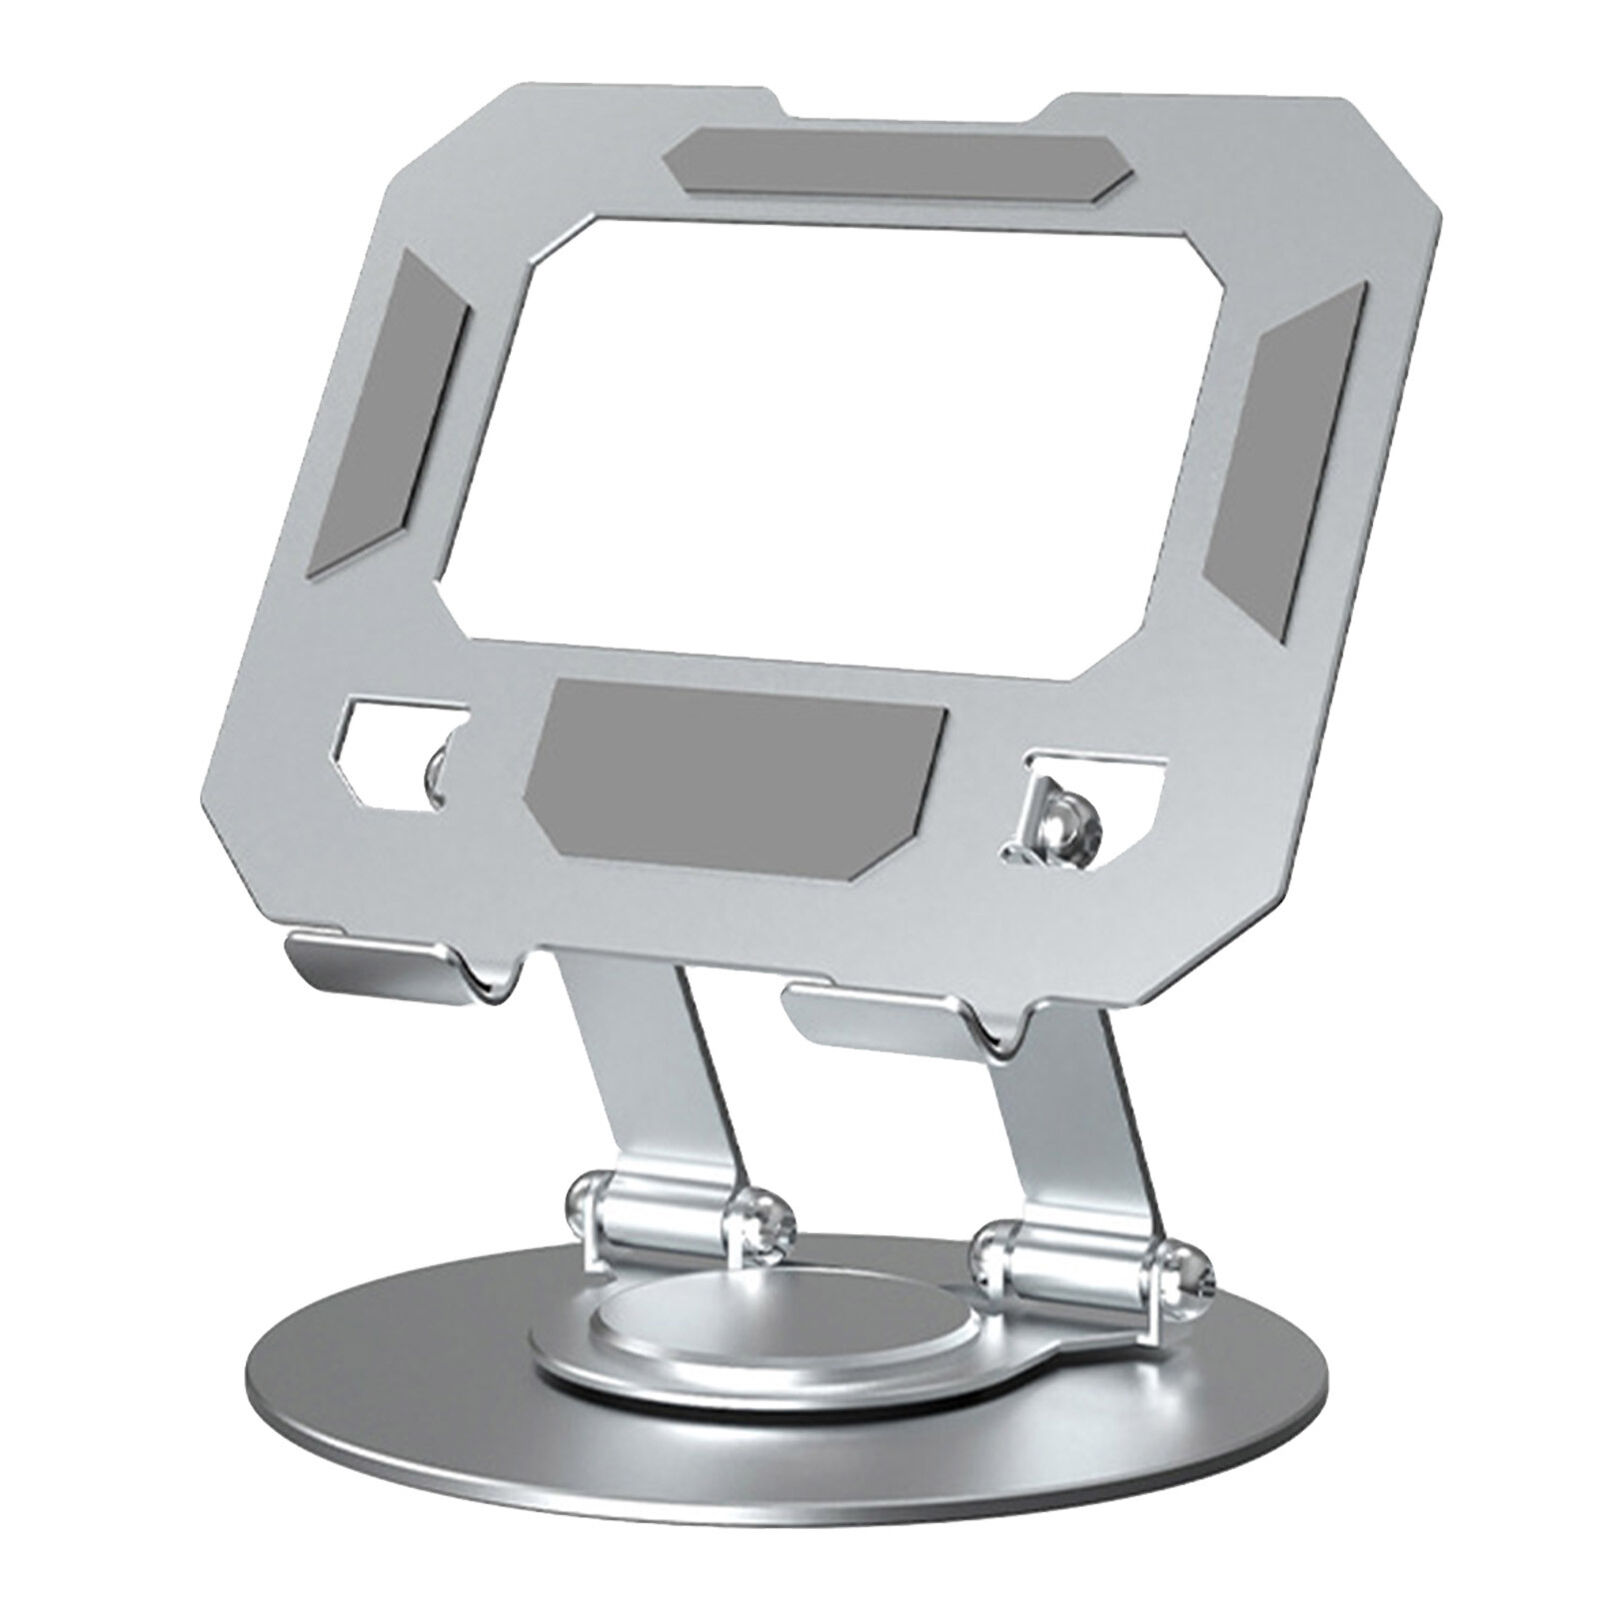 Tablet Stand Swivel 360 Degree Rotating Adjustable Carbon Steel Tablet Holder